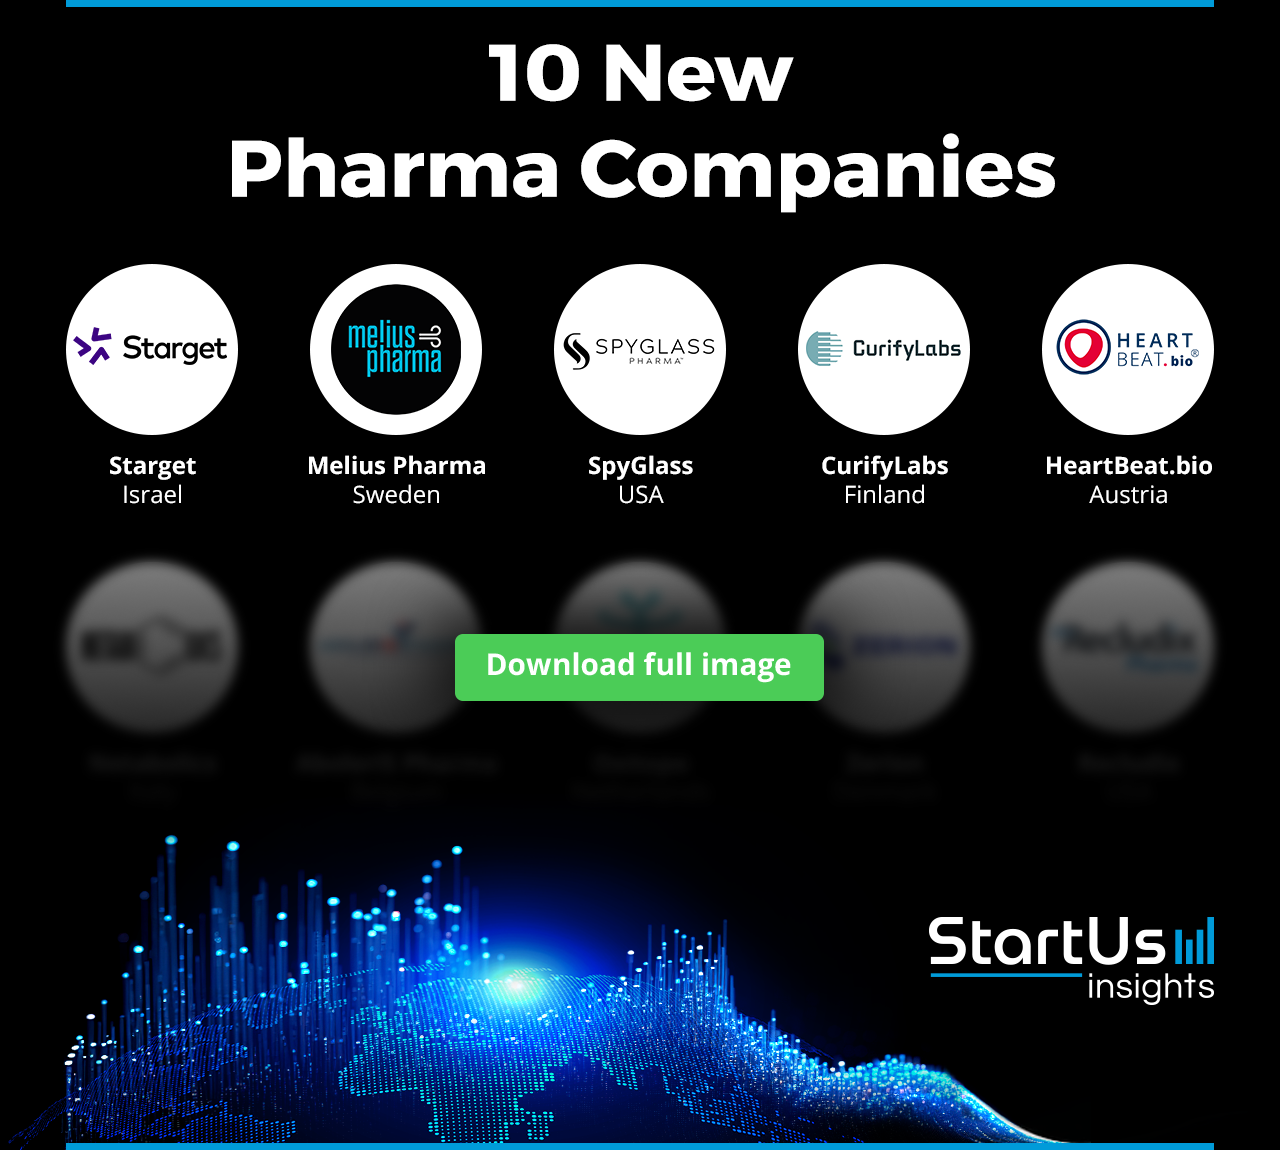 10 New Pharma Companies